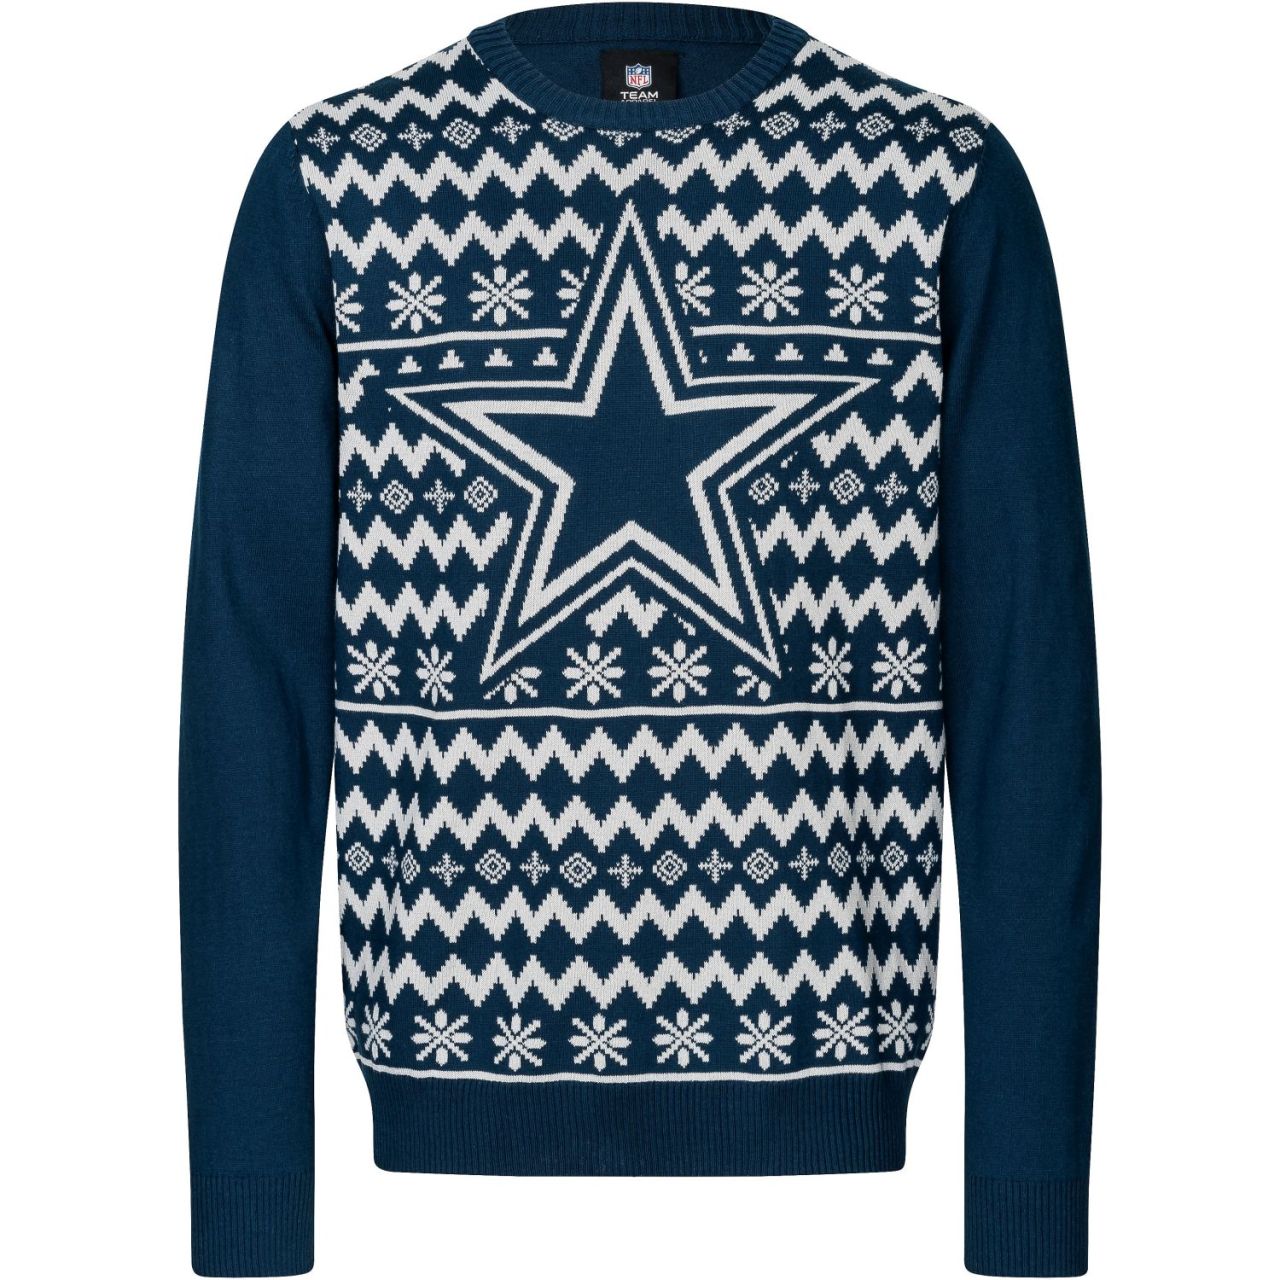 NFL Winter Sweater XMAS Strick Pullover Dallas Cowboys von FOCO